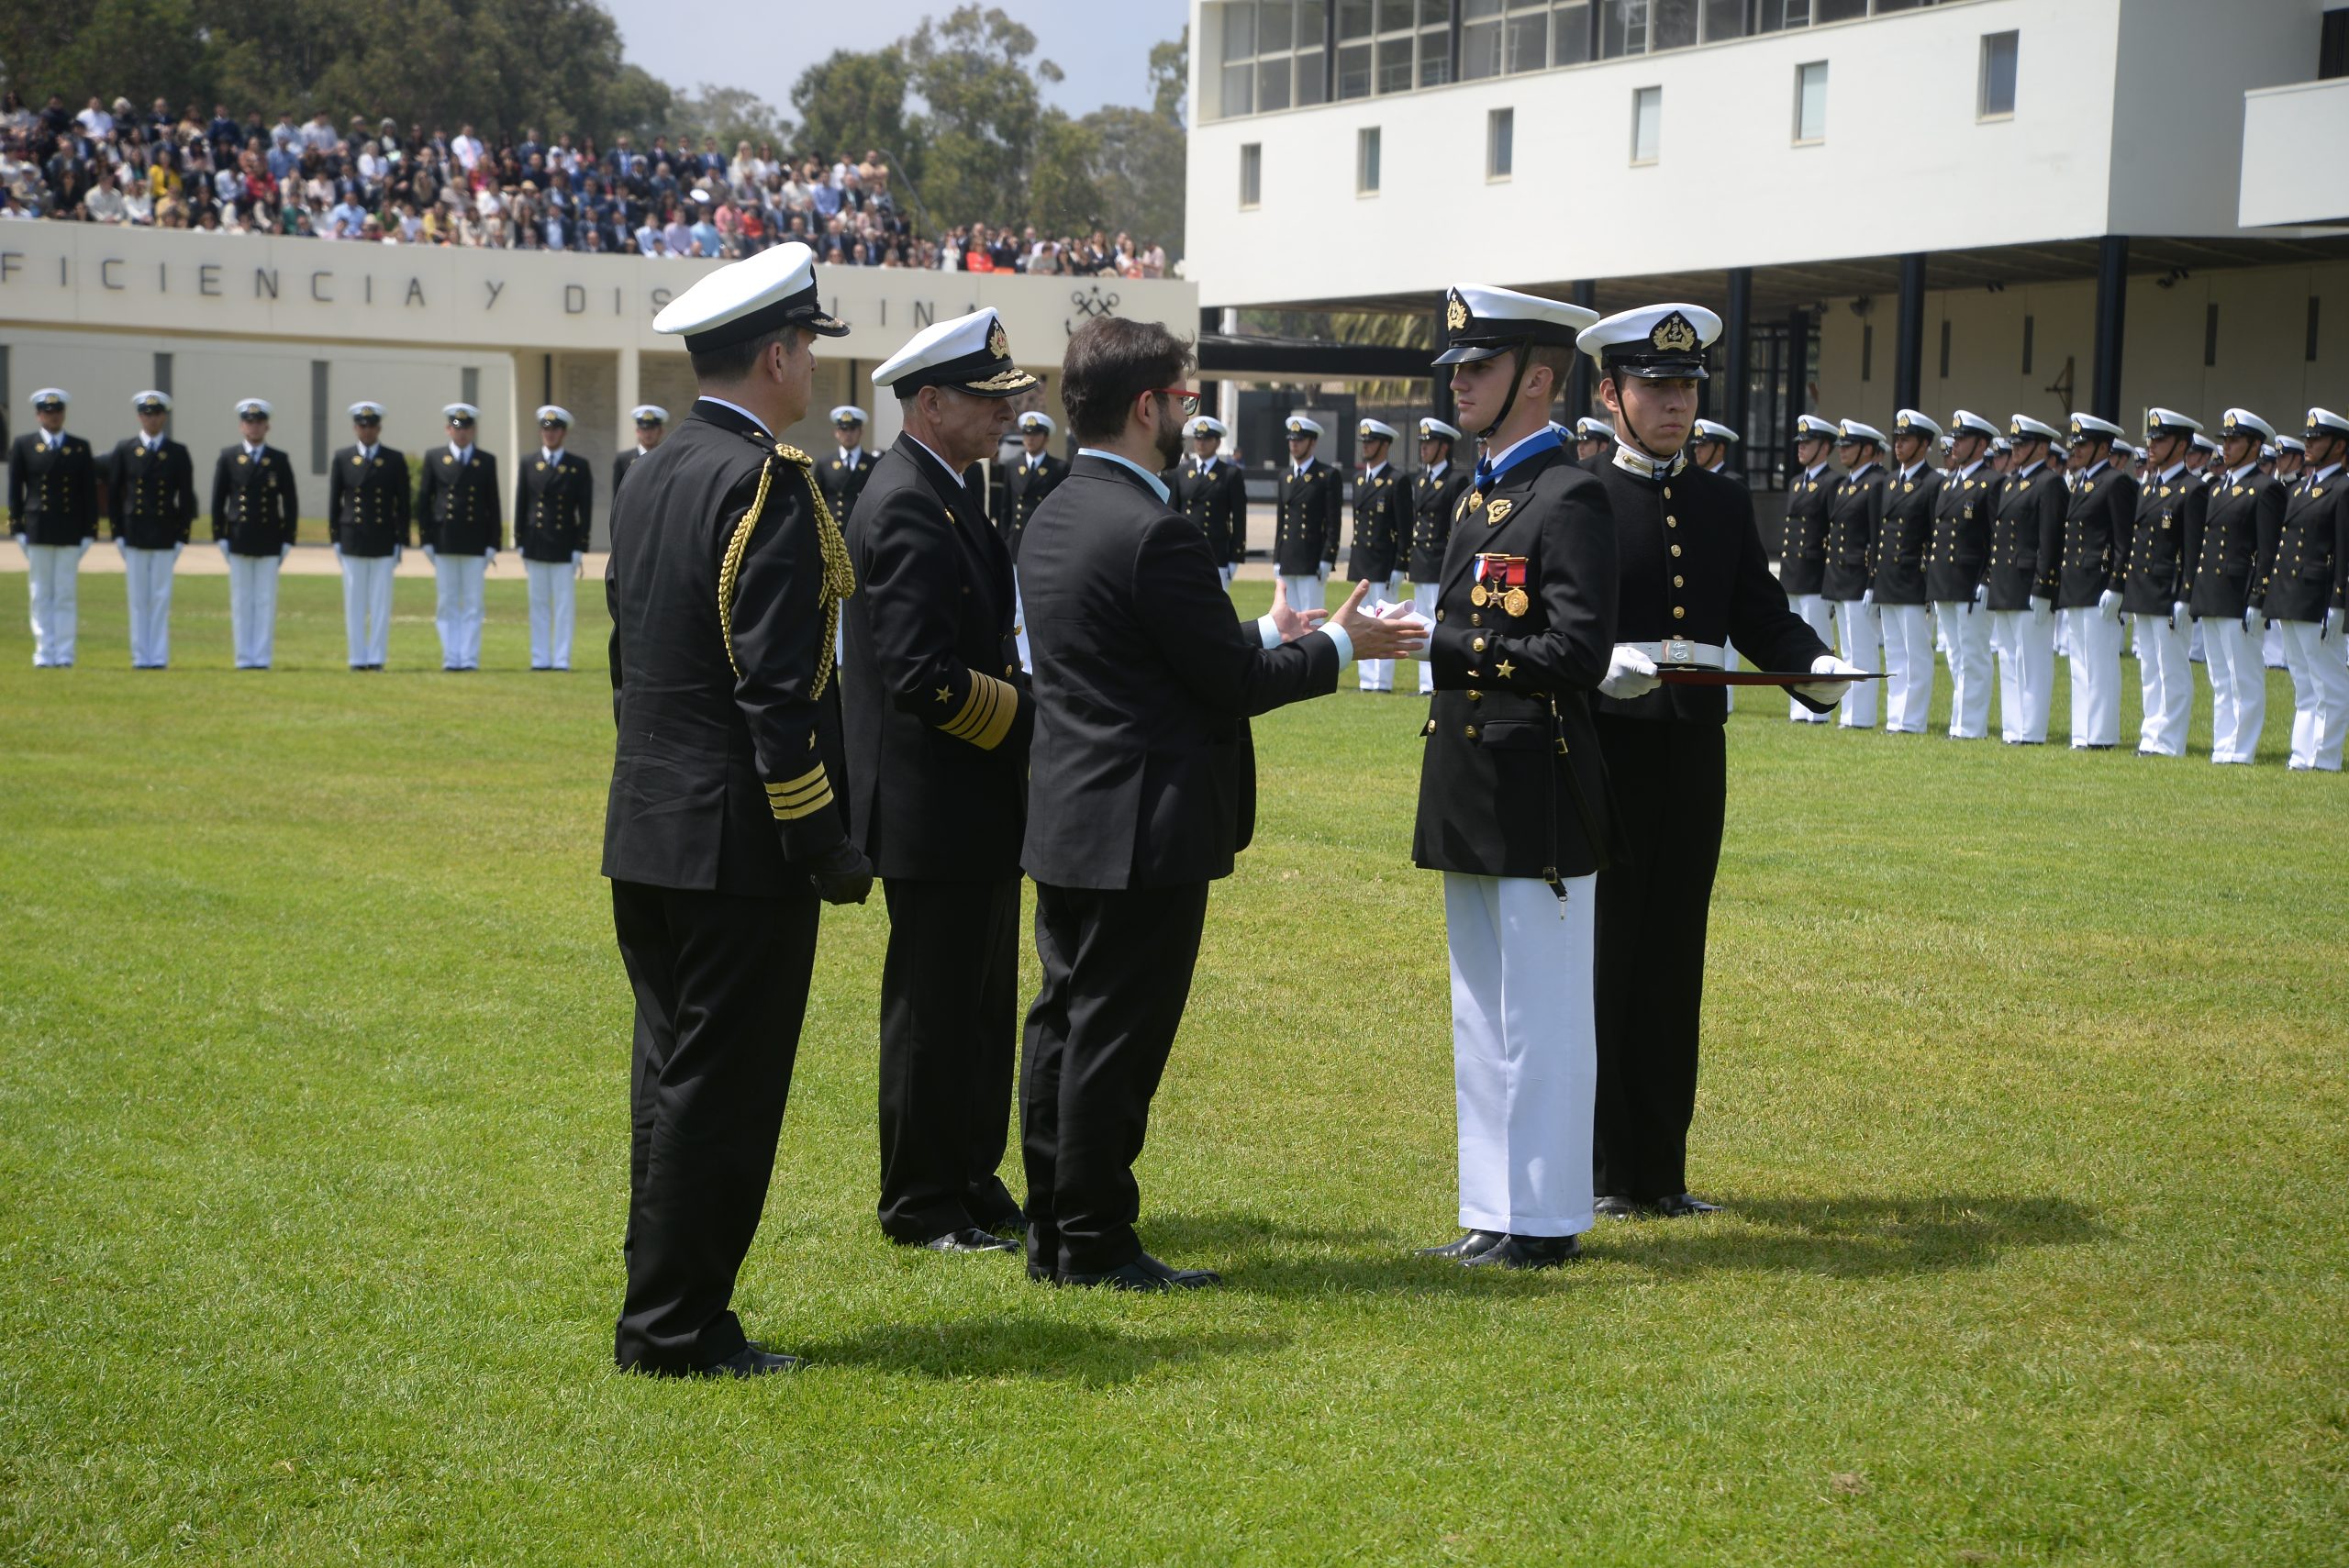 Más de 700 nuevos Oficiales y Gente de Mar de la Armada de Chile juraron a la bandera